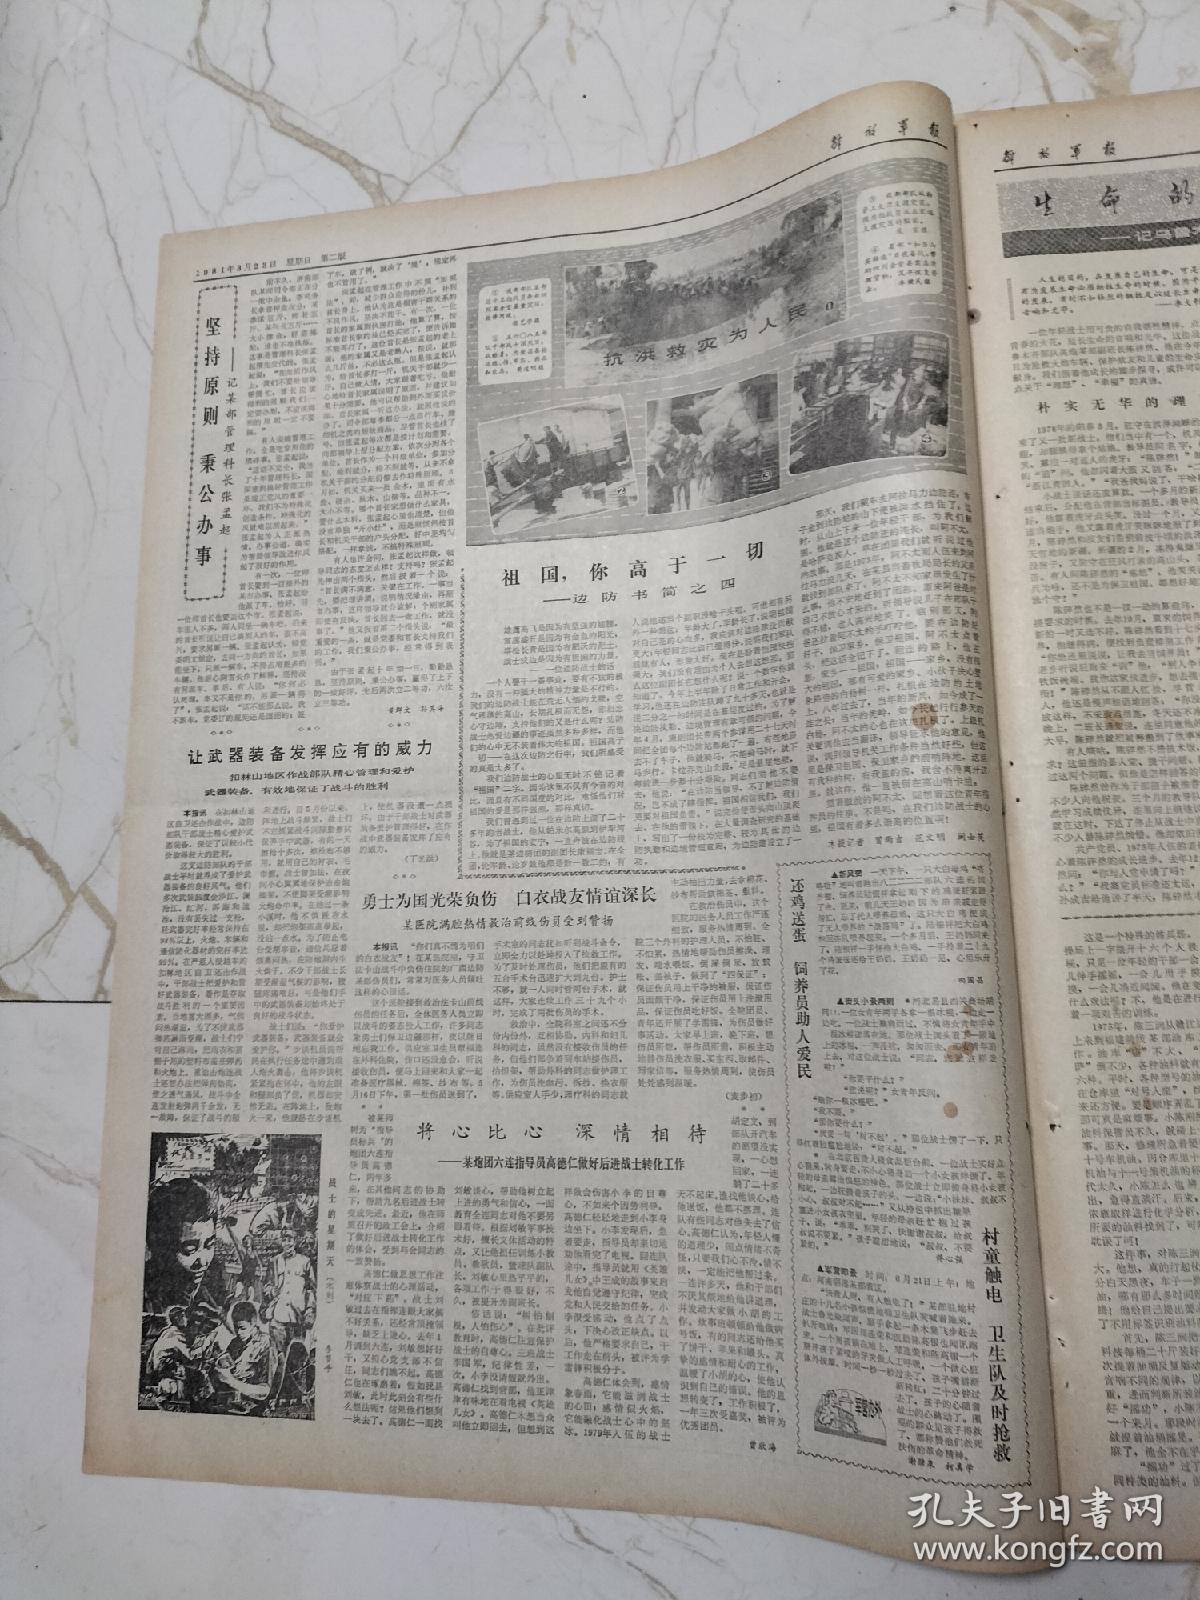 解放军报1981年8月23日，刘爱英为群众做节育手术，乌鲁木齐部队高炮某部副班长陈碎然，陈三润的三手硬功，战士的星期天李节平木刻